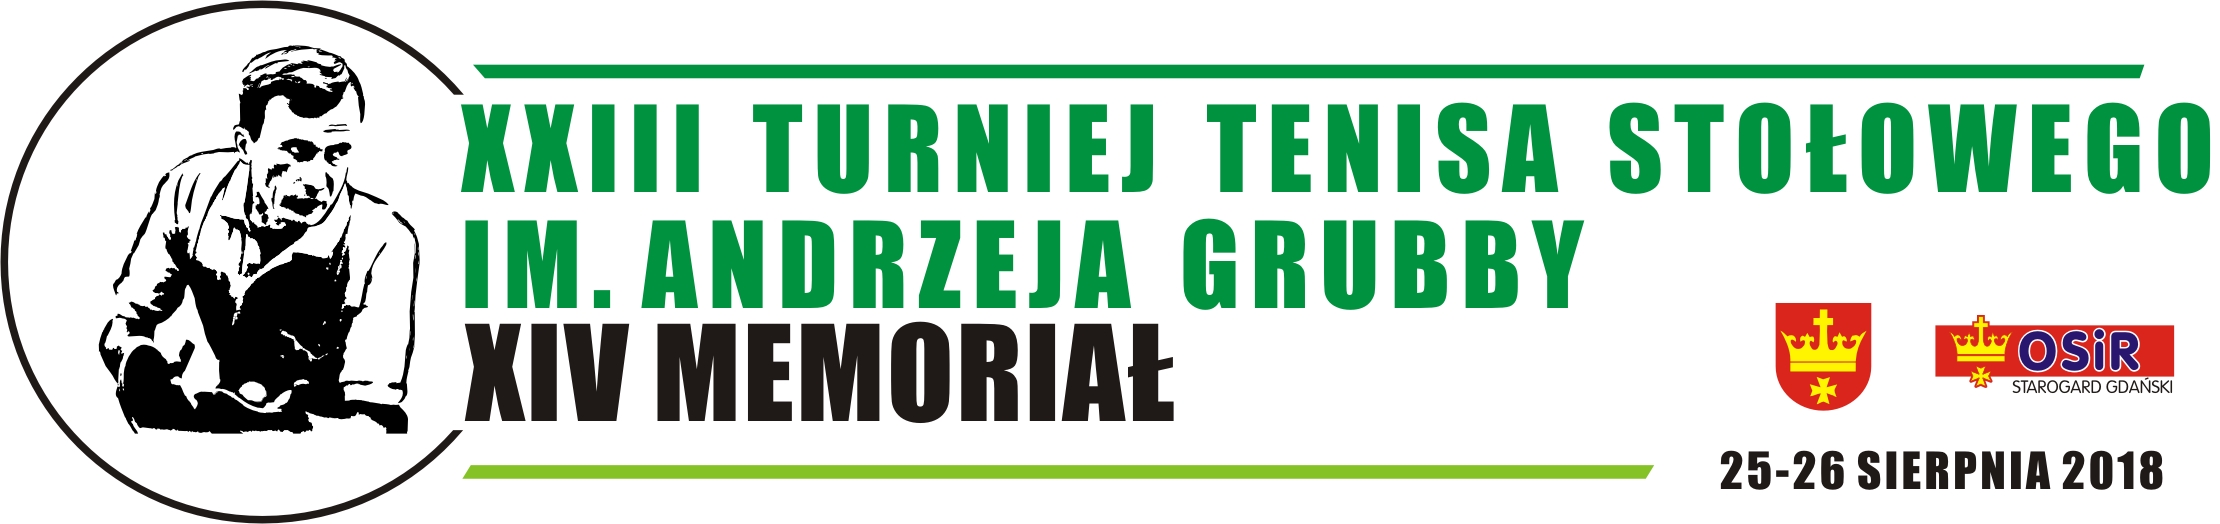 XXIII Międzynarodowy Turniej Tenisa Stołowego  XIV Memoriał im. A. Grubby